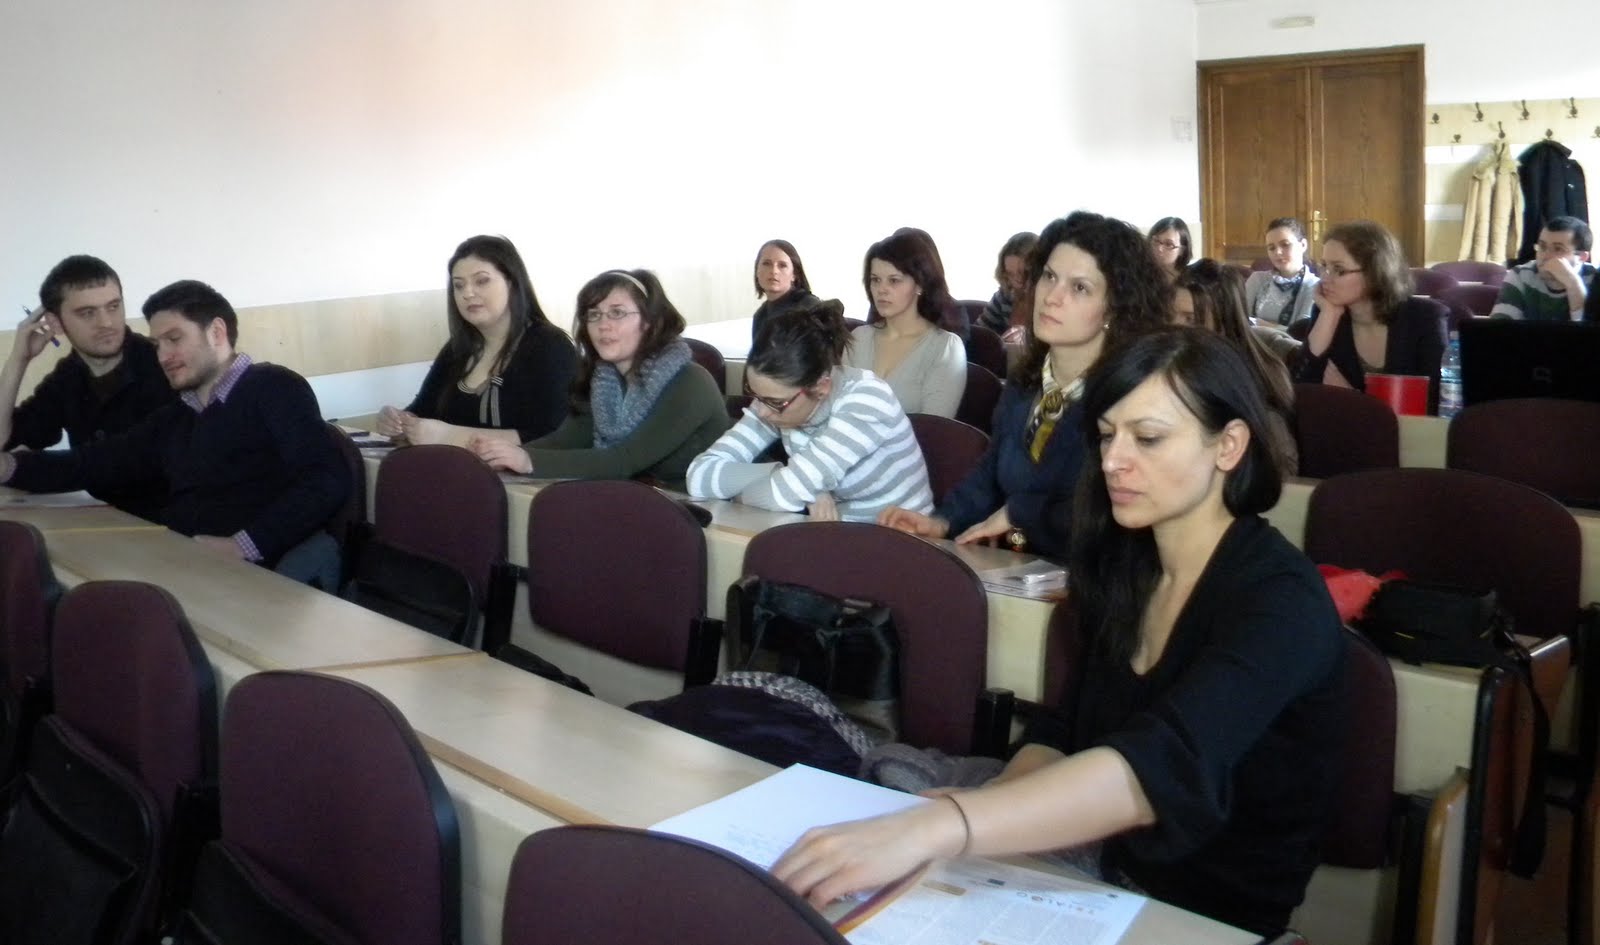 orosz nő meeting forum)